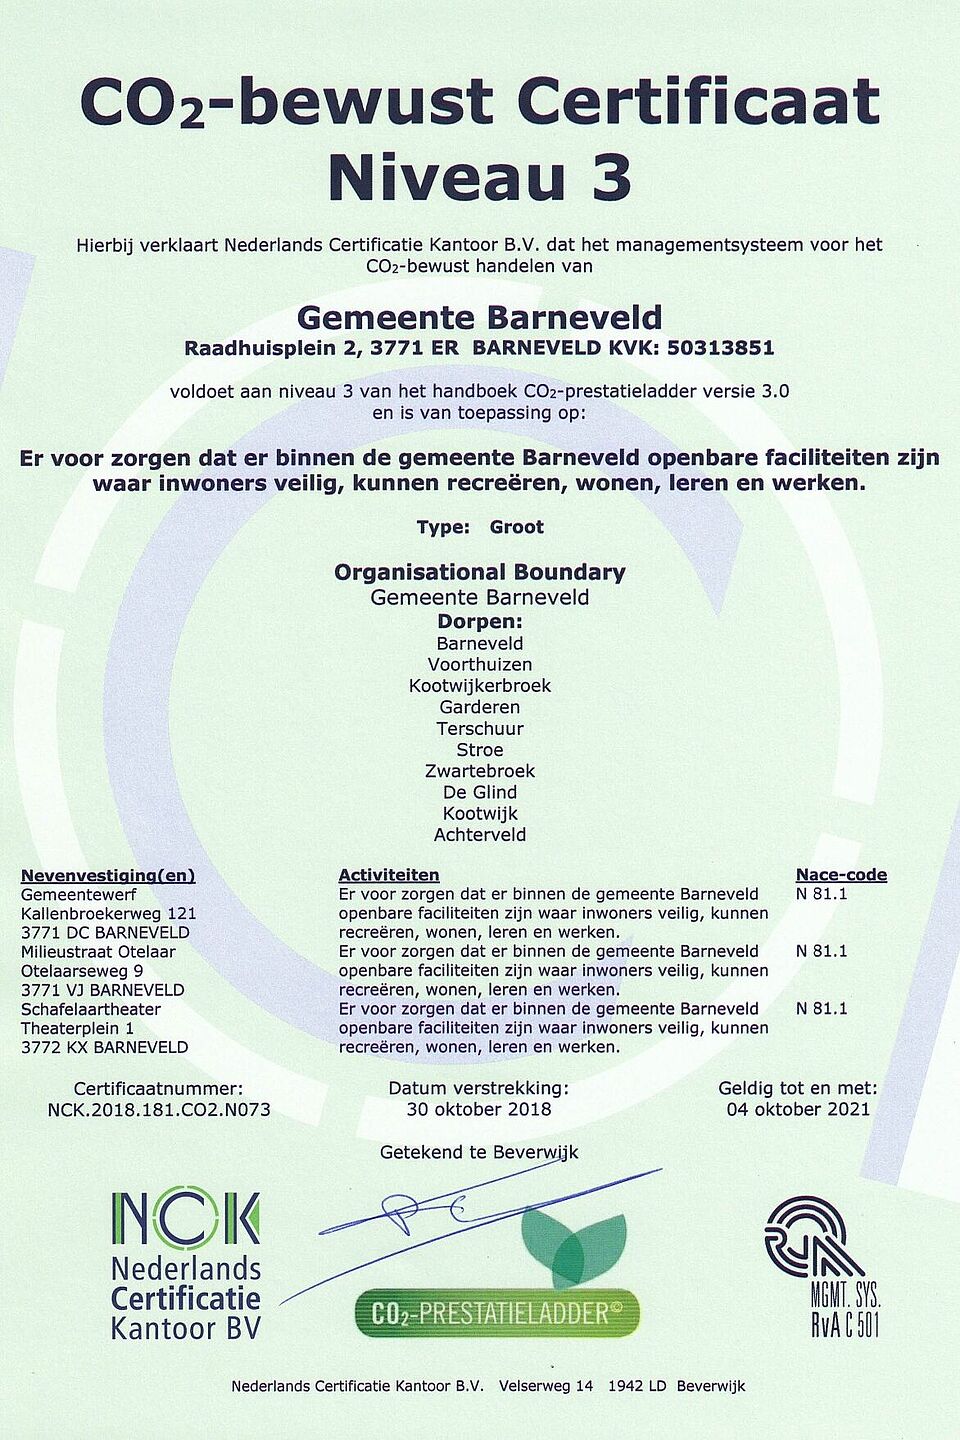 Afbeelding van het CO2 certificaat. Dit certificaat is afgegeven door het Nederlands Certificatie Kantoor, het NCK. Het NCK verklaart daarmee dat de Gemeente Barneveld, gevestigd op Raadhuisplein 2 in Barneveld, voldoet aan de eisen voor het halen van niveau 3 op de CO2-Prestatieladder. Het certificaat is uitgegeven op 30 oktober 2018 en is geldig tot en met 4 oktober 2021. 